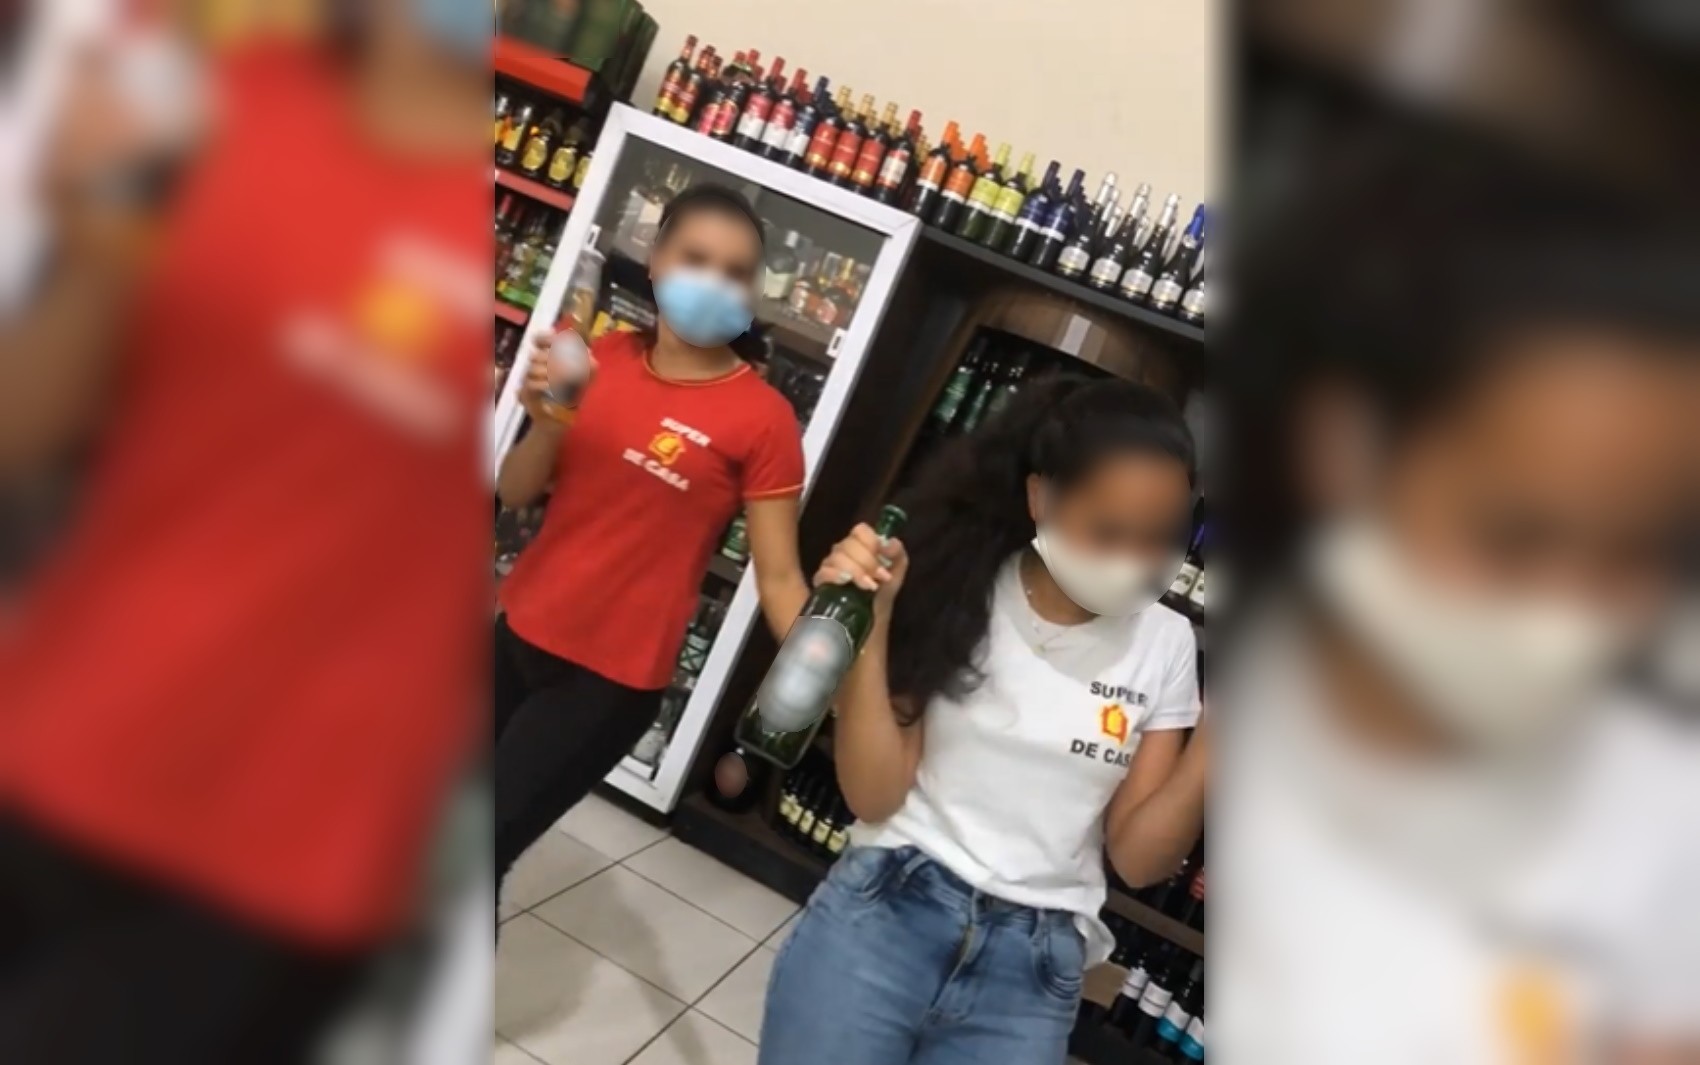 Adolescentes aparecem em propaganda de bebidas alcoólicas de supermercado em São Luiz de Montes Belos; vídeo